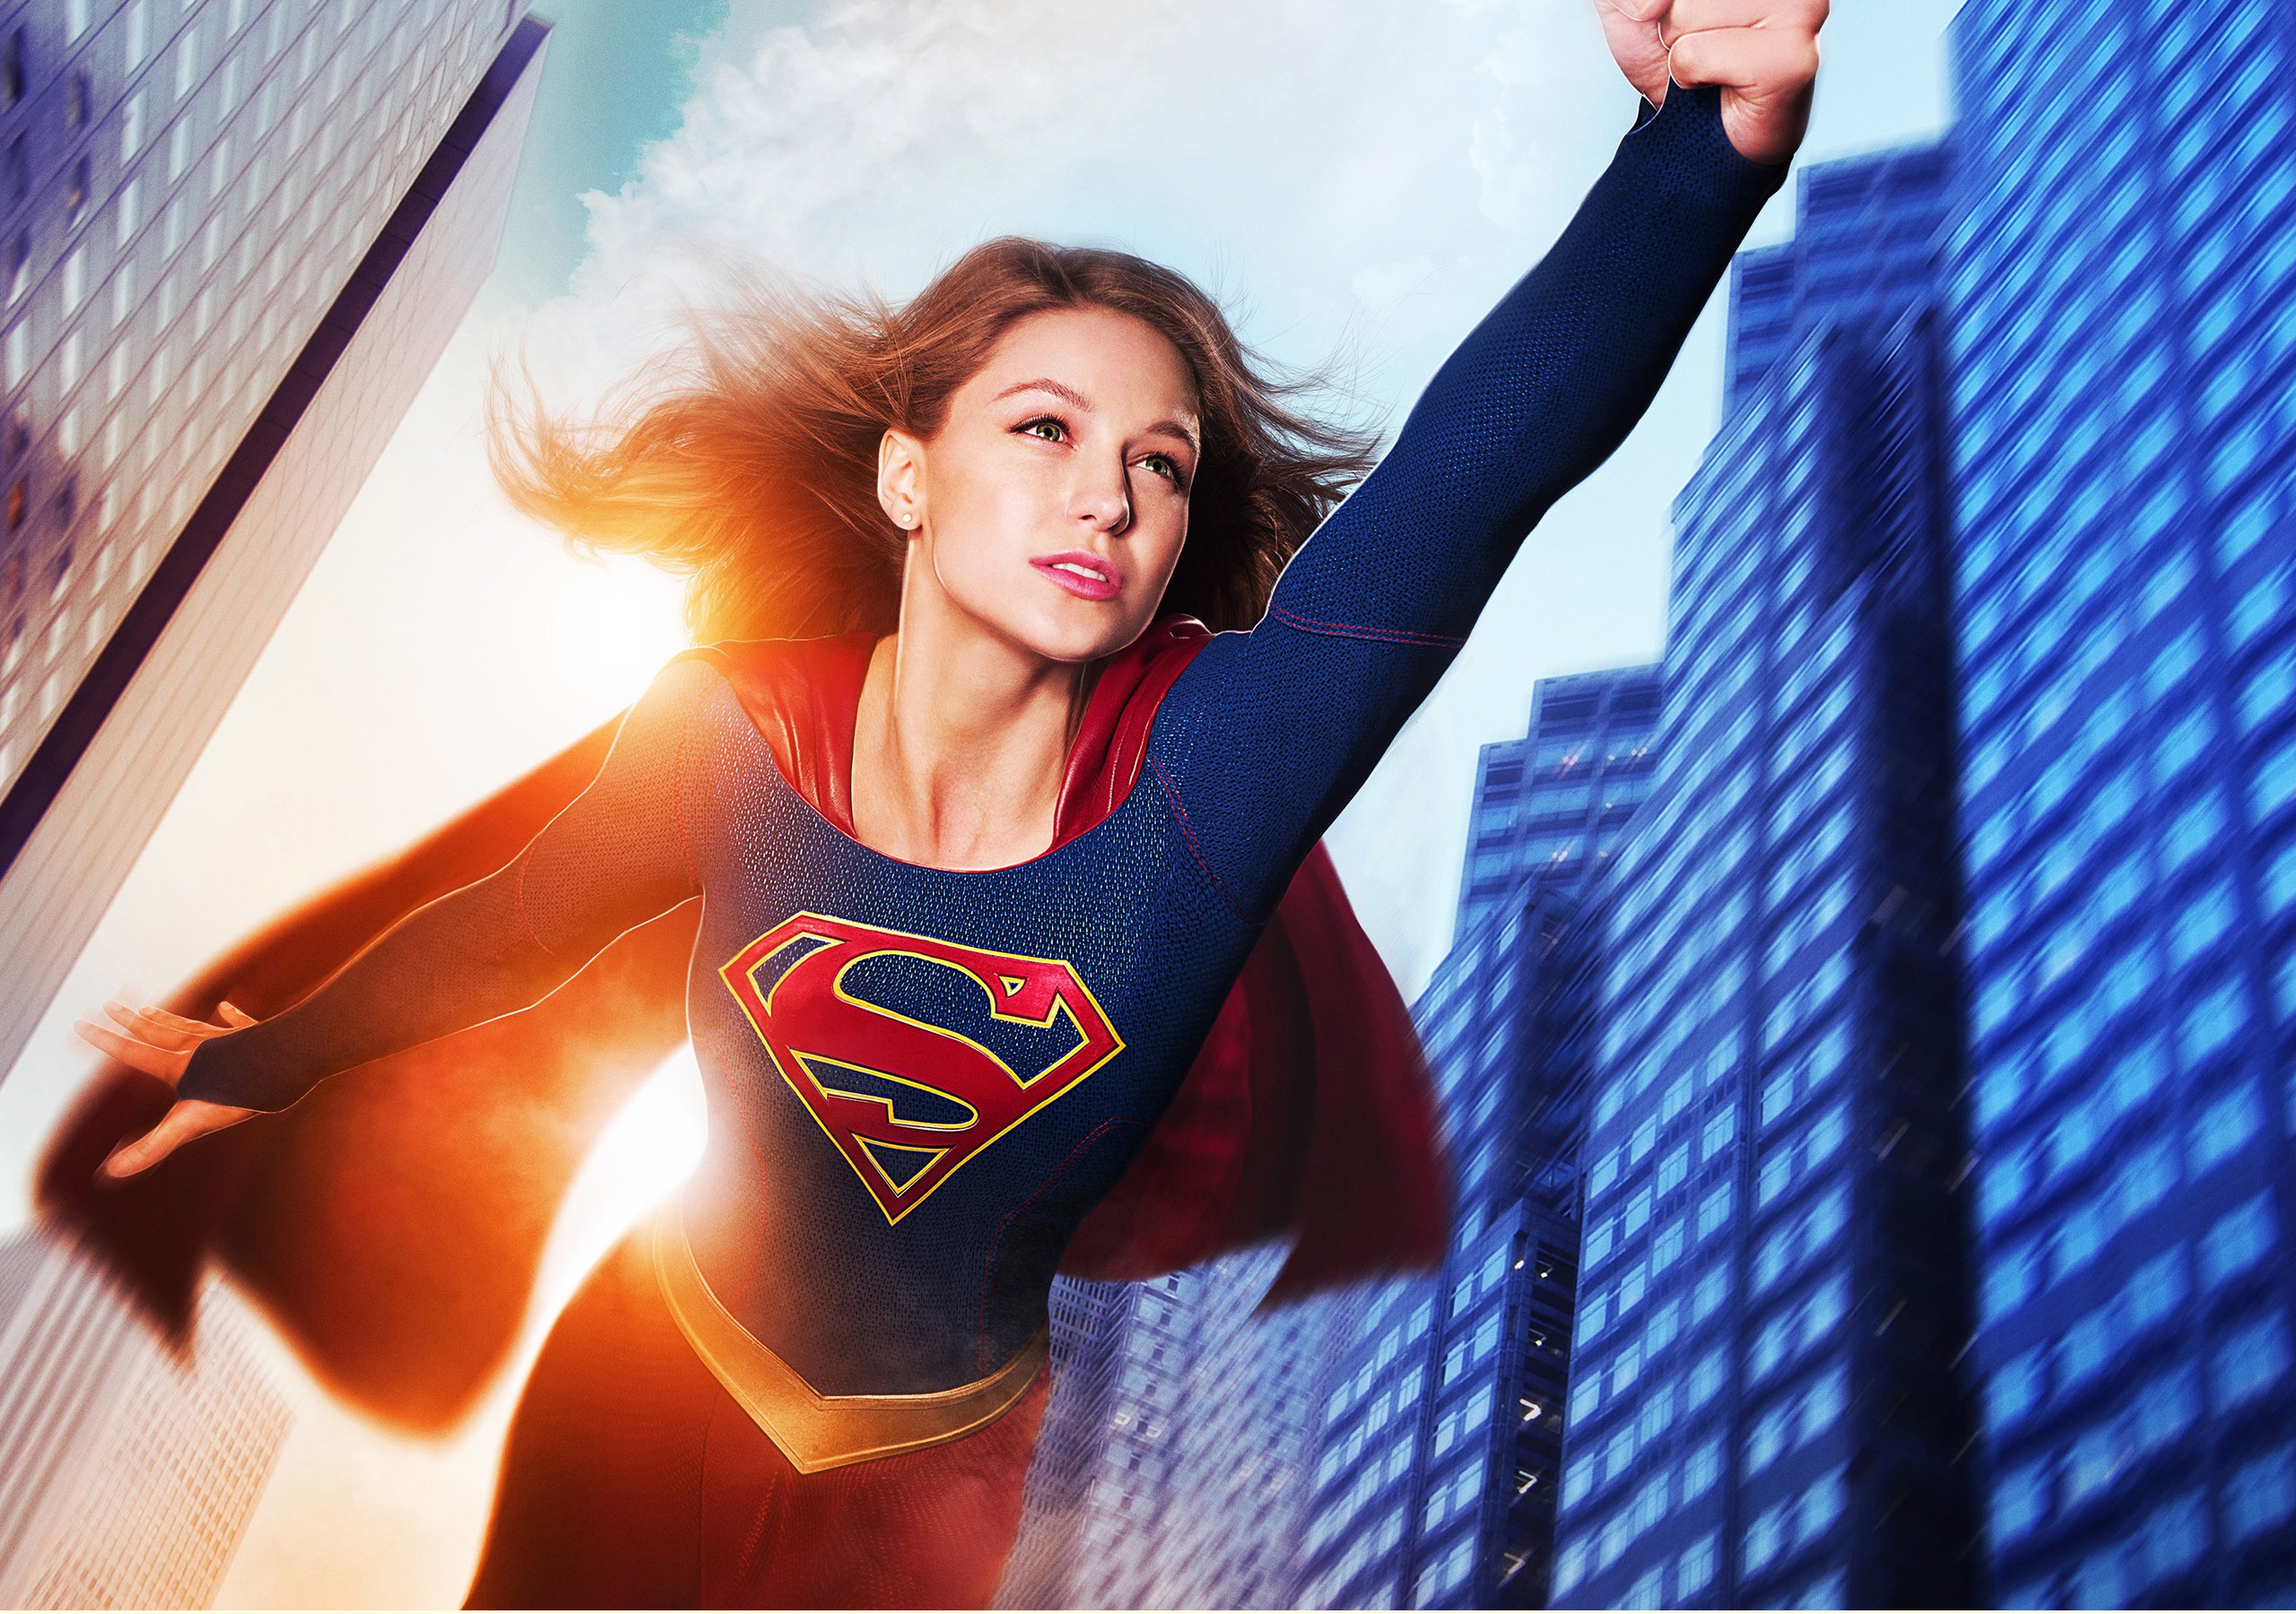 megan fox supergirl fond d'écran,super héros,personnage fictif,ligue de justice,superman,héros